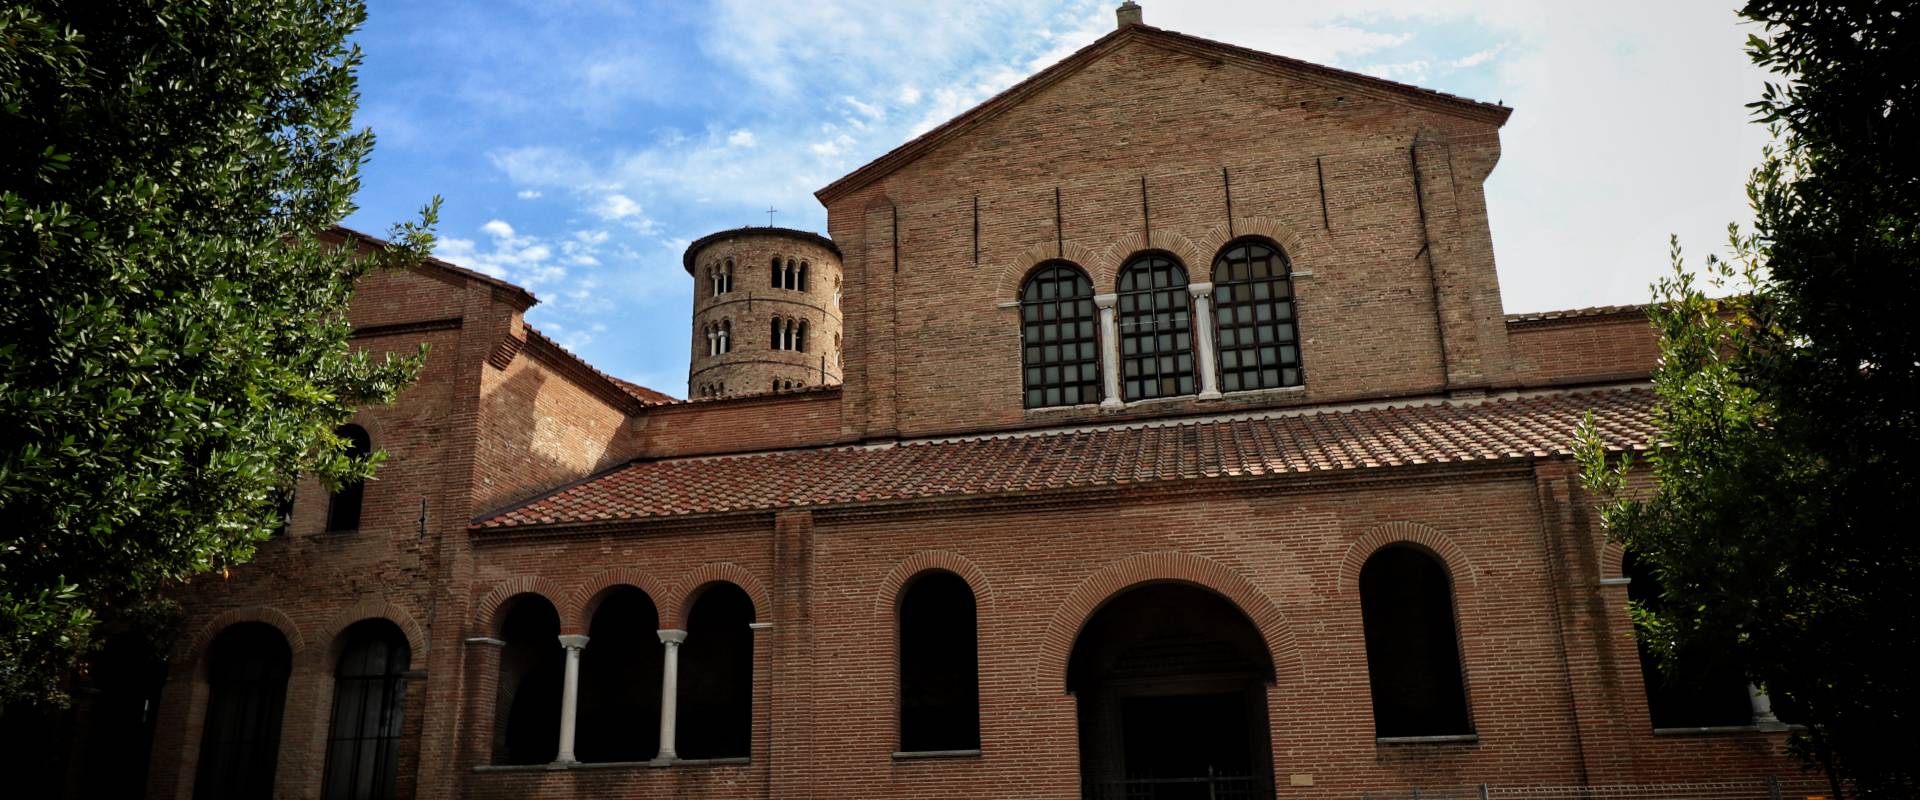 Basilica di Sant'Apollinare in Classe, Ravenna (esterno, facciata) photo by Stefano Casano